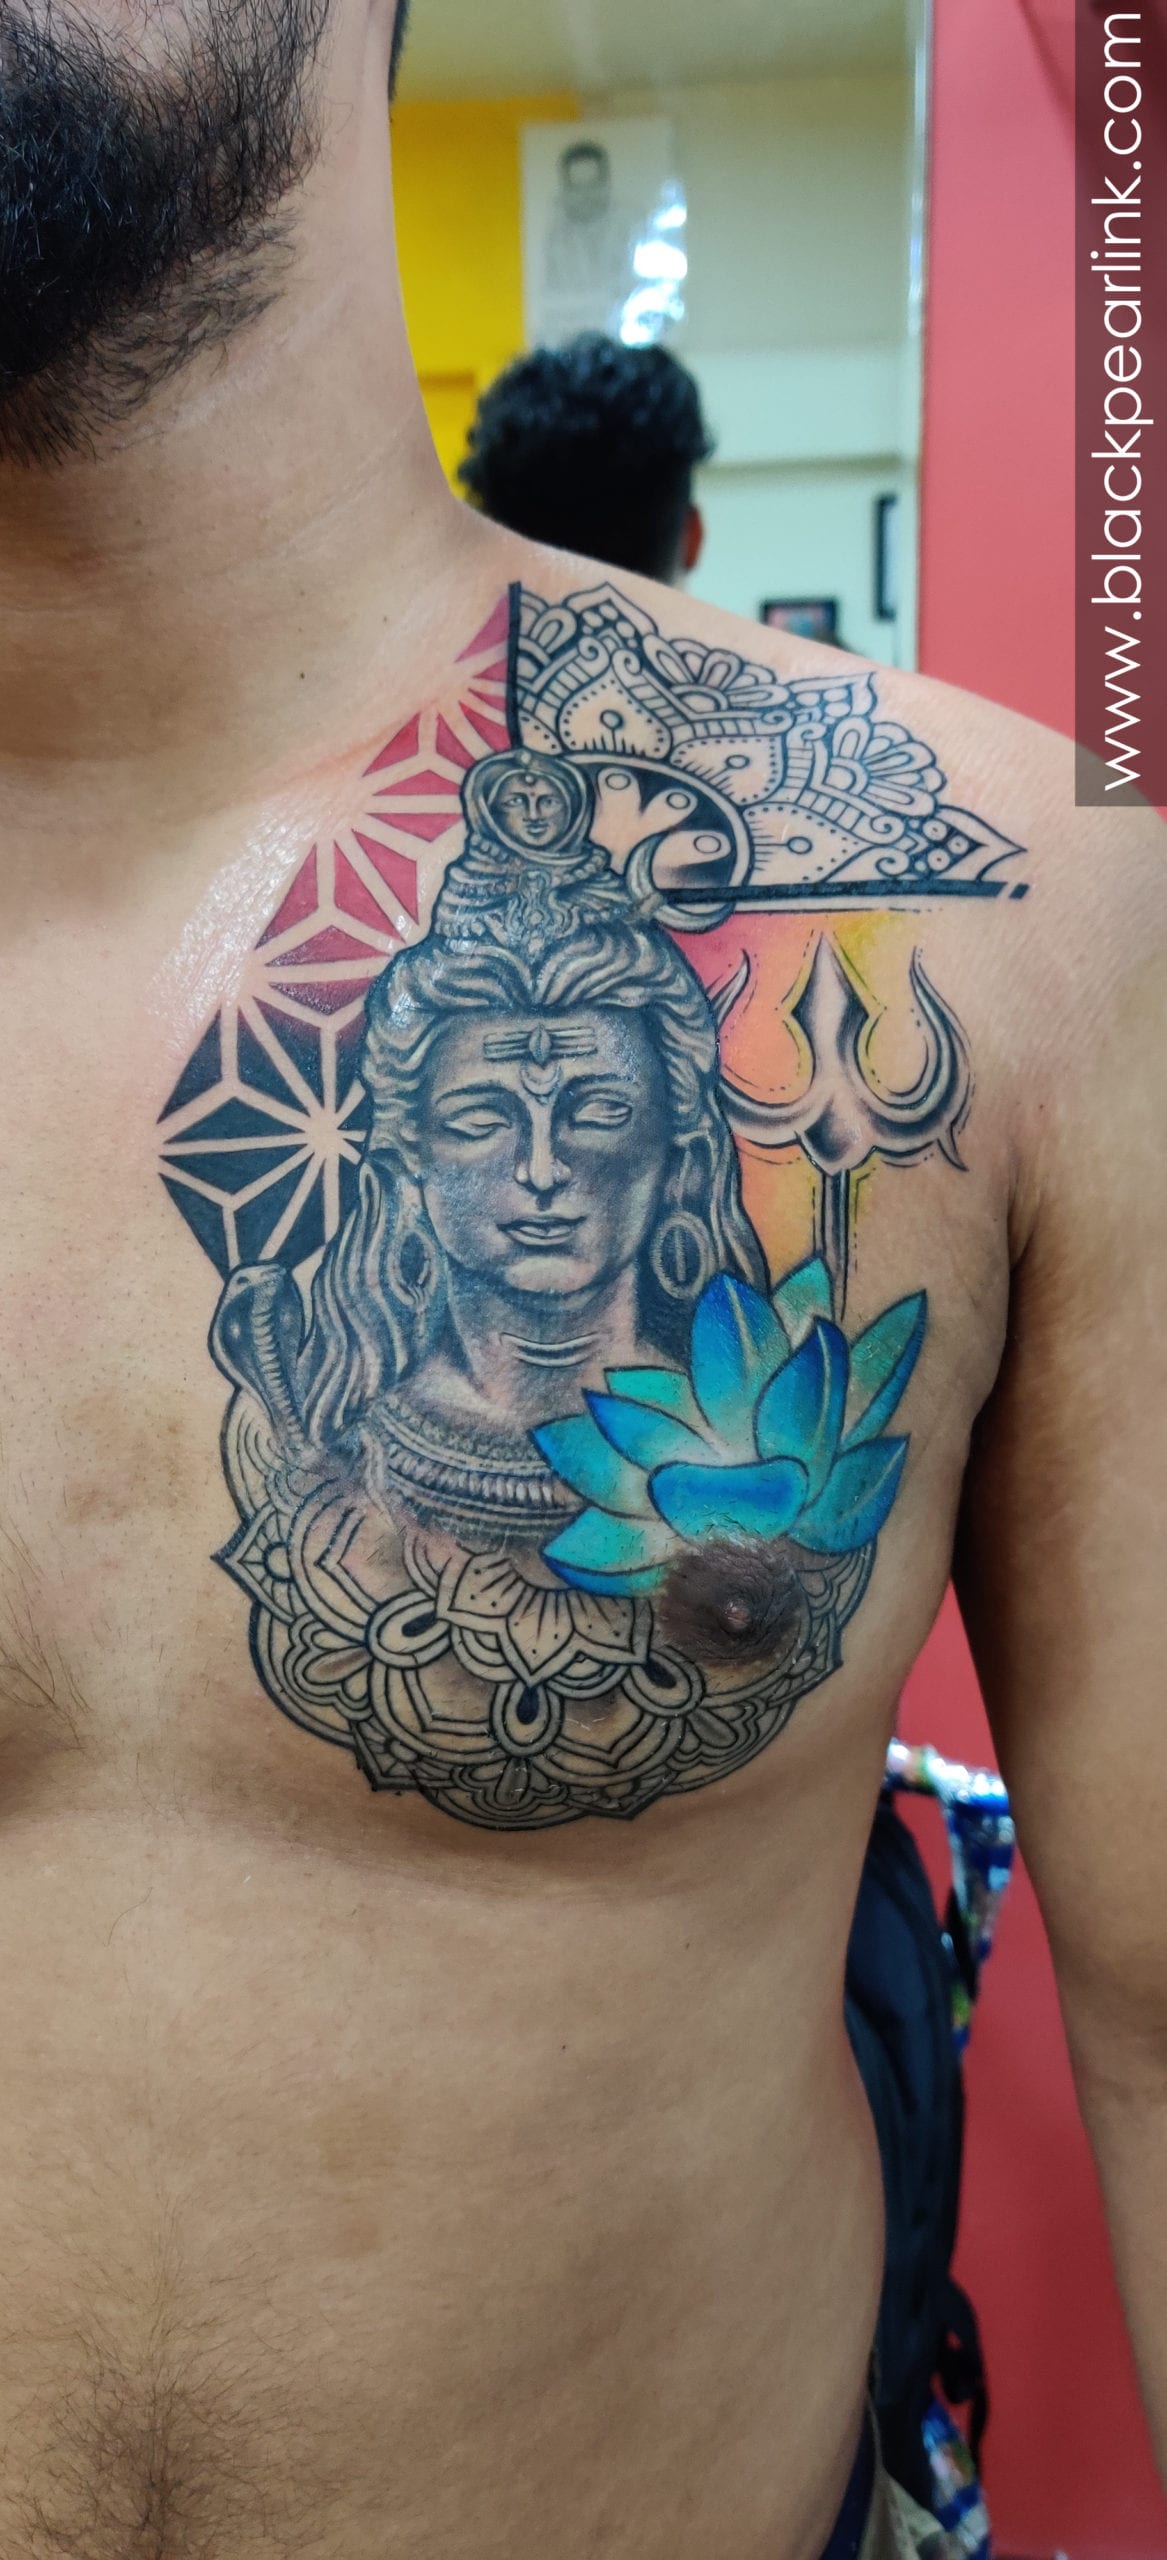 Kiran's BODY Tatto - Trishul#om#shiva#damaru#siva#siva#shiv#neck#tat# tattoo#beautiful#permanent#tatu#  kiranstattoos@7978994116/9853547700 | Facebook